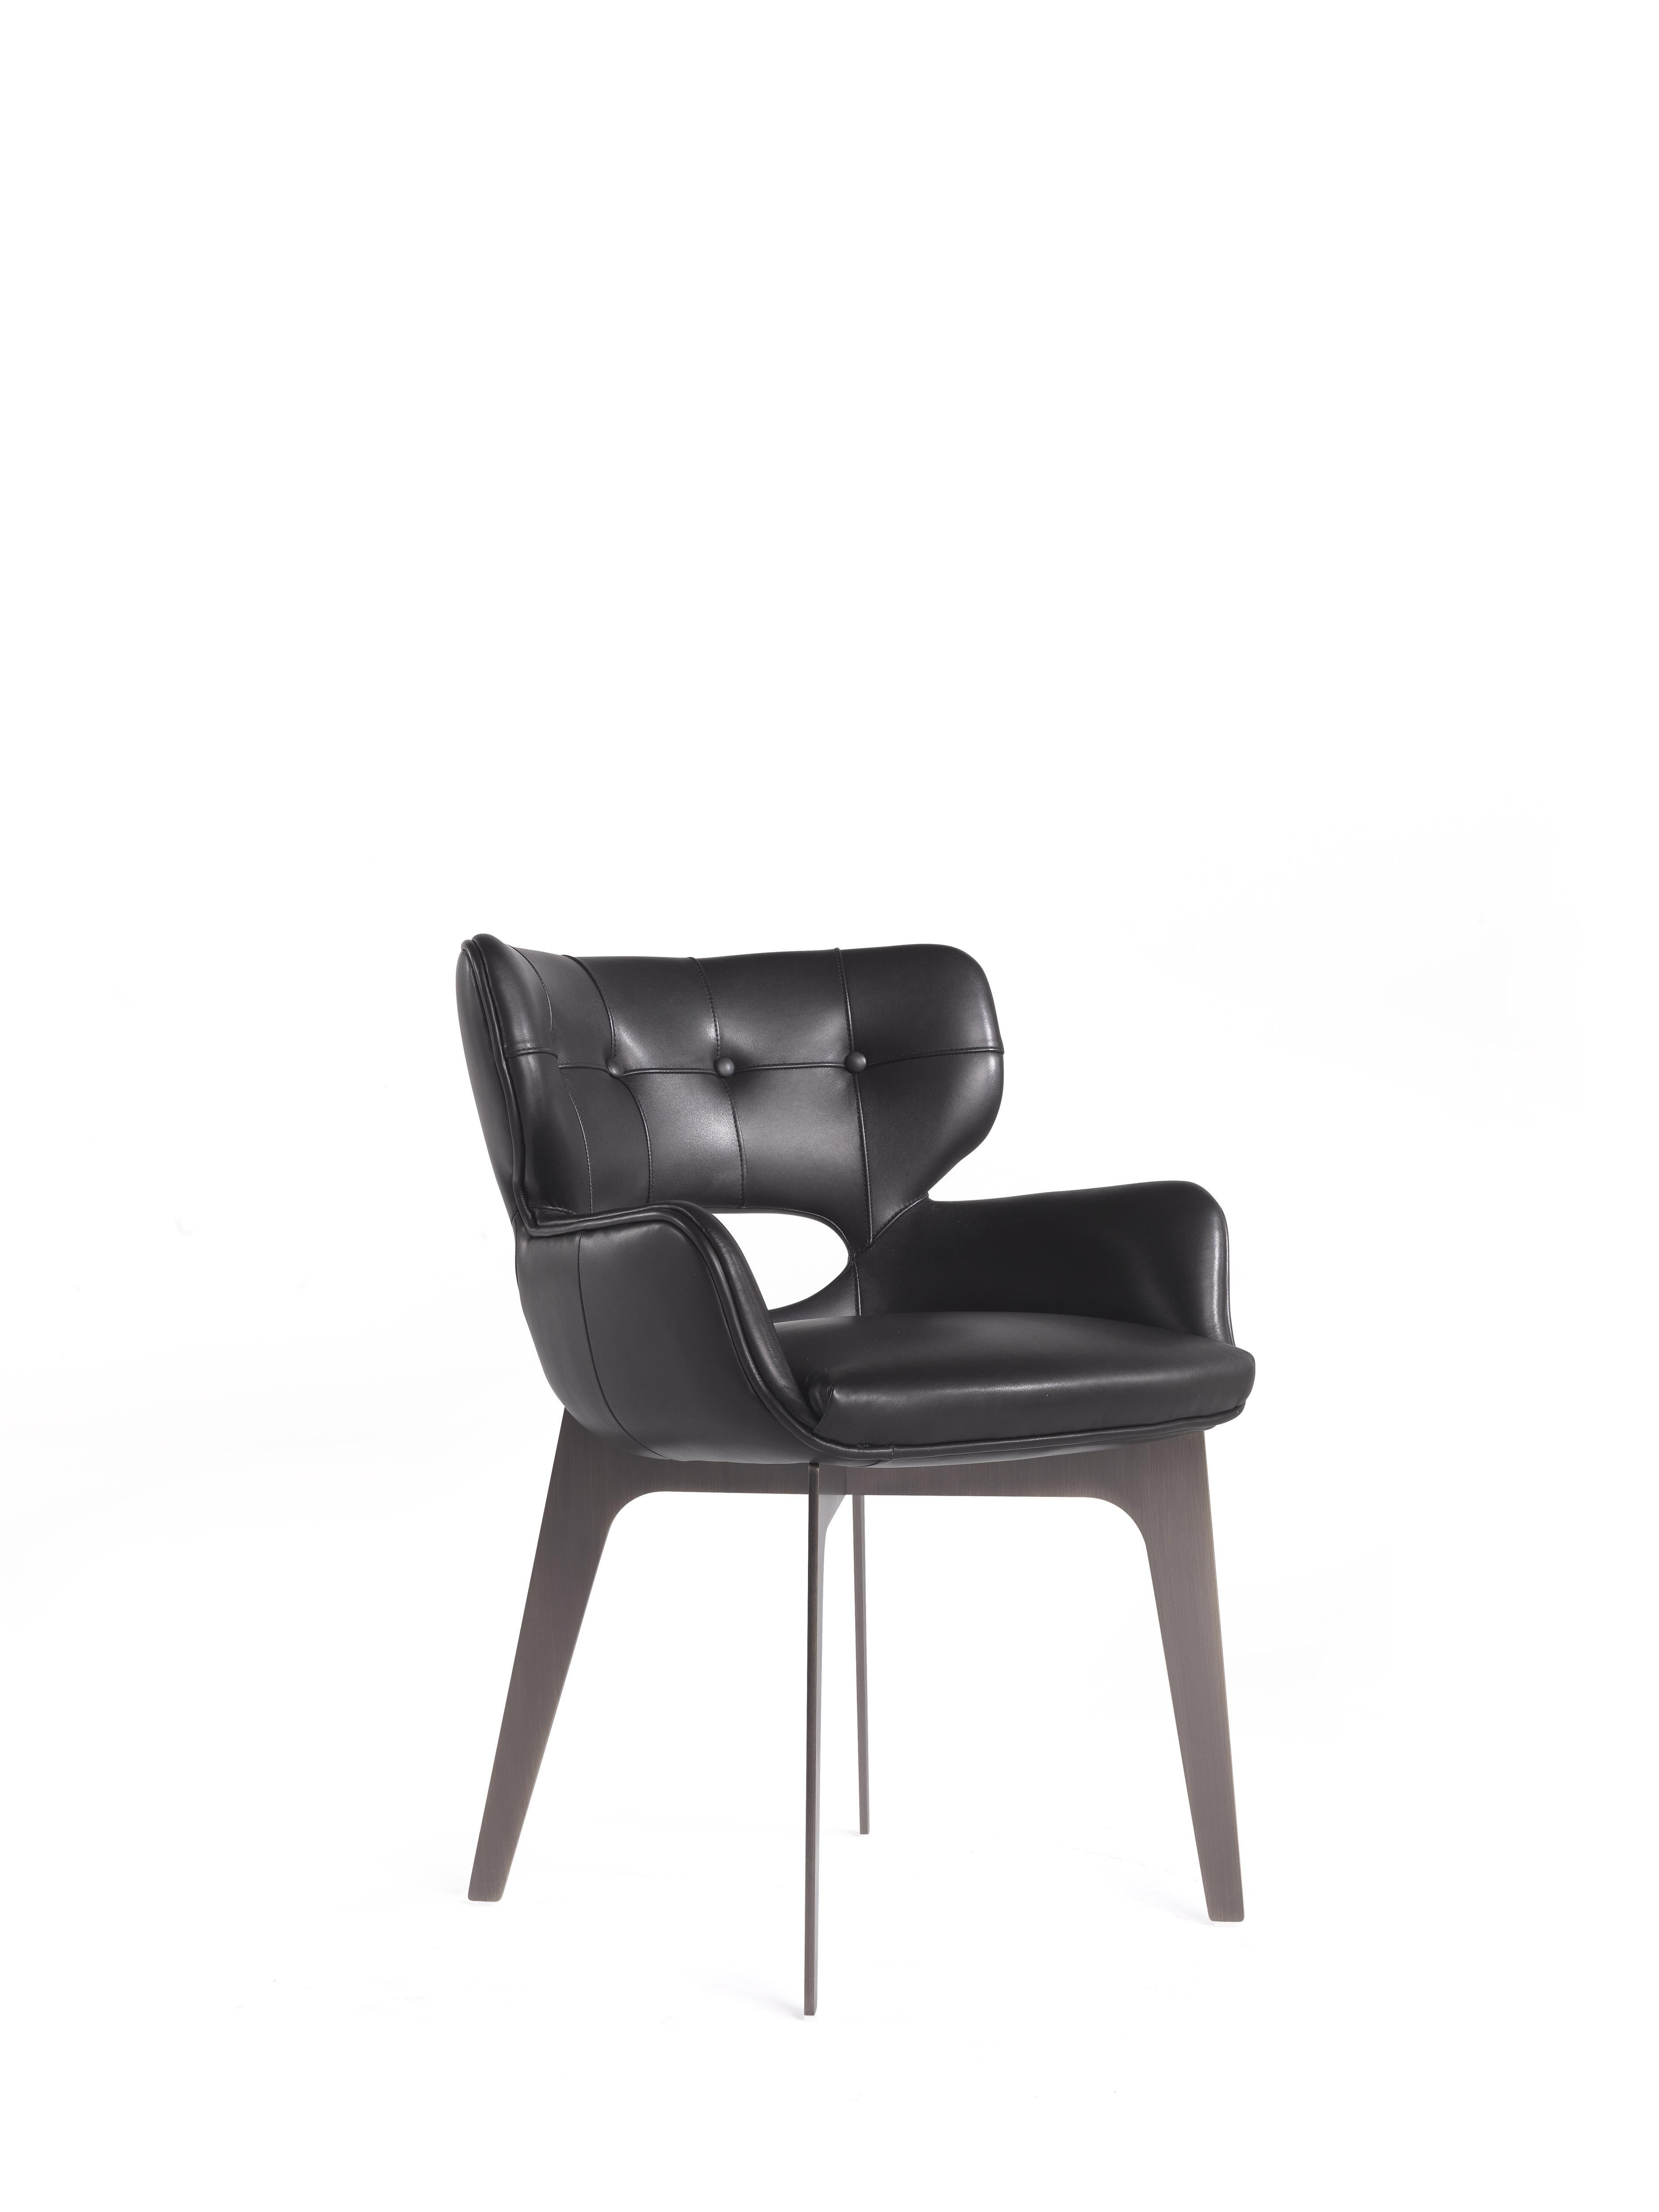 Mit seinem unverwechselbaren Stil der 1950er Jahre verleiht der üppige und raffinierte Sessel dem Wohnzimmer eine schicke und moderne Note. Maclaine ist in verschiedenen Ausführungen erhältlich; in diesem Fall ist er mit der neuen Seide mit